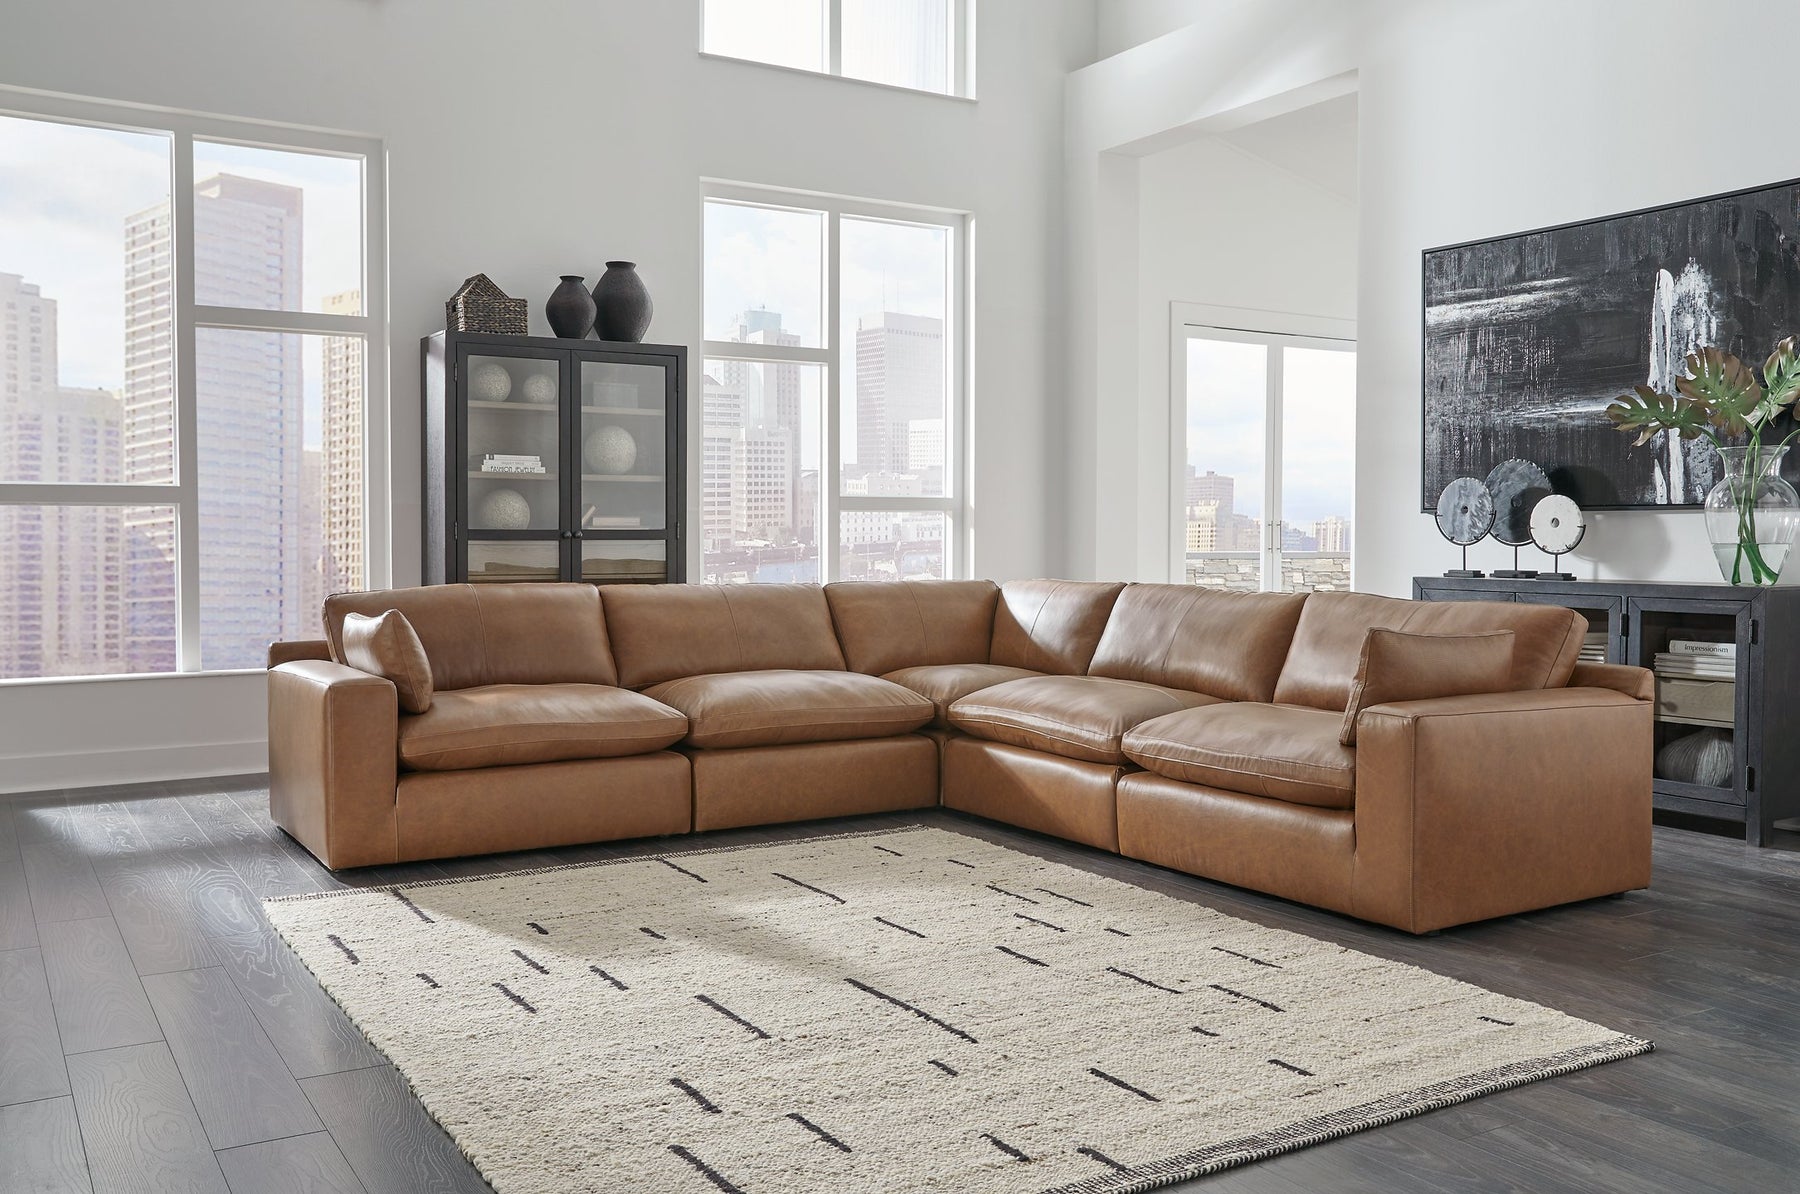 Emilia Living Room Set - Half Price Furniture